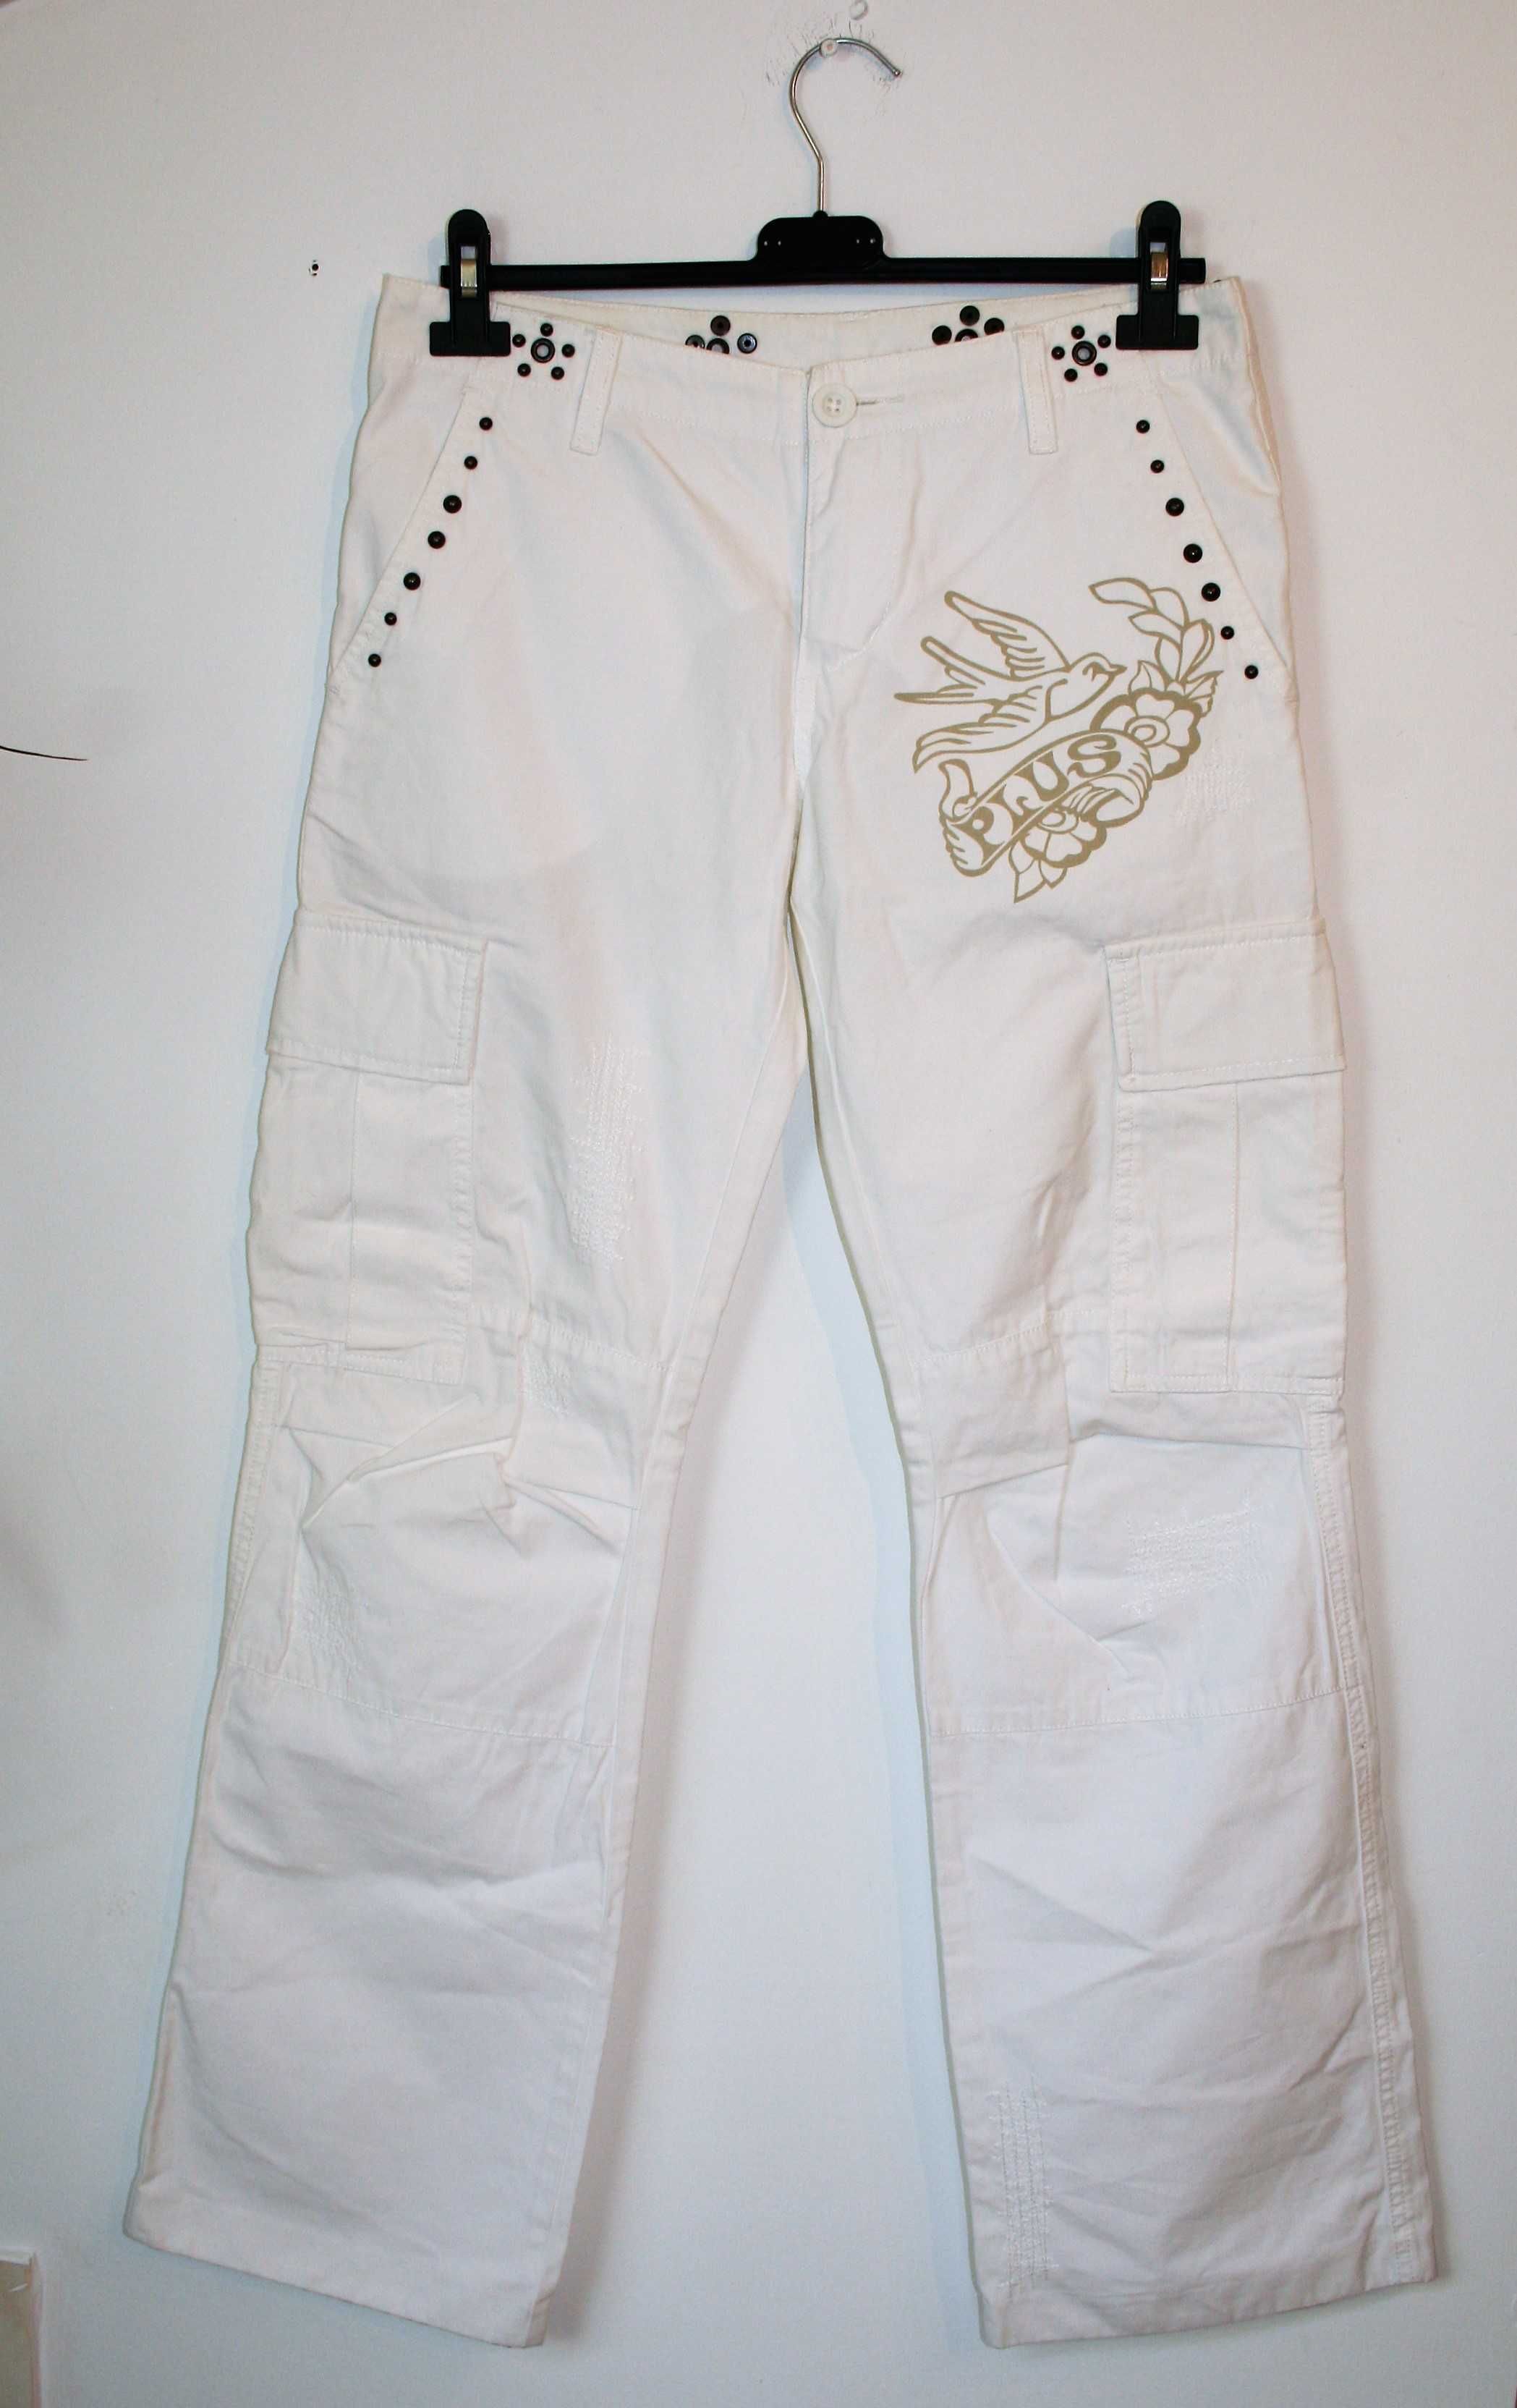 Białe spodnie damskie /PLUSMINUS/spodnie haftowane /bawełna rz: S